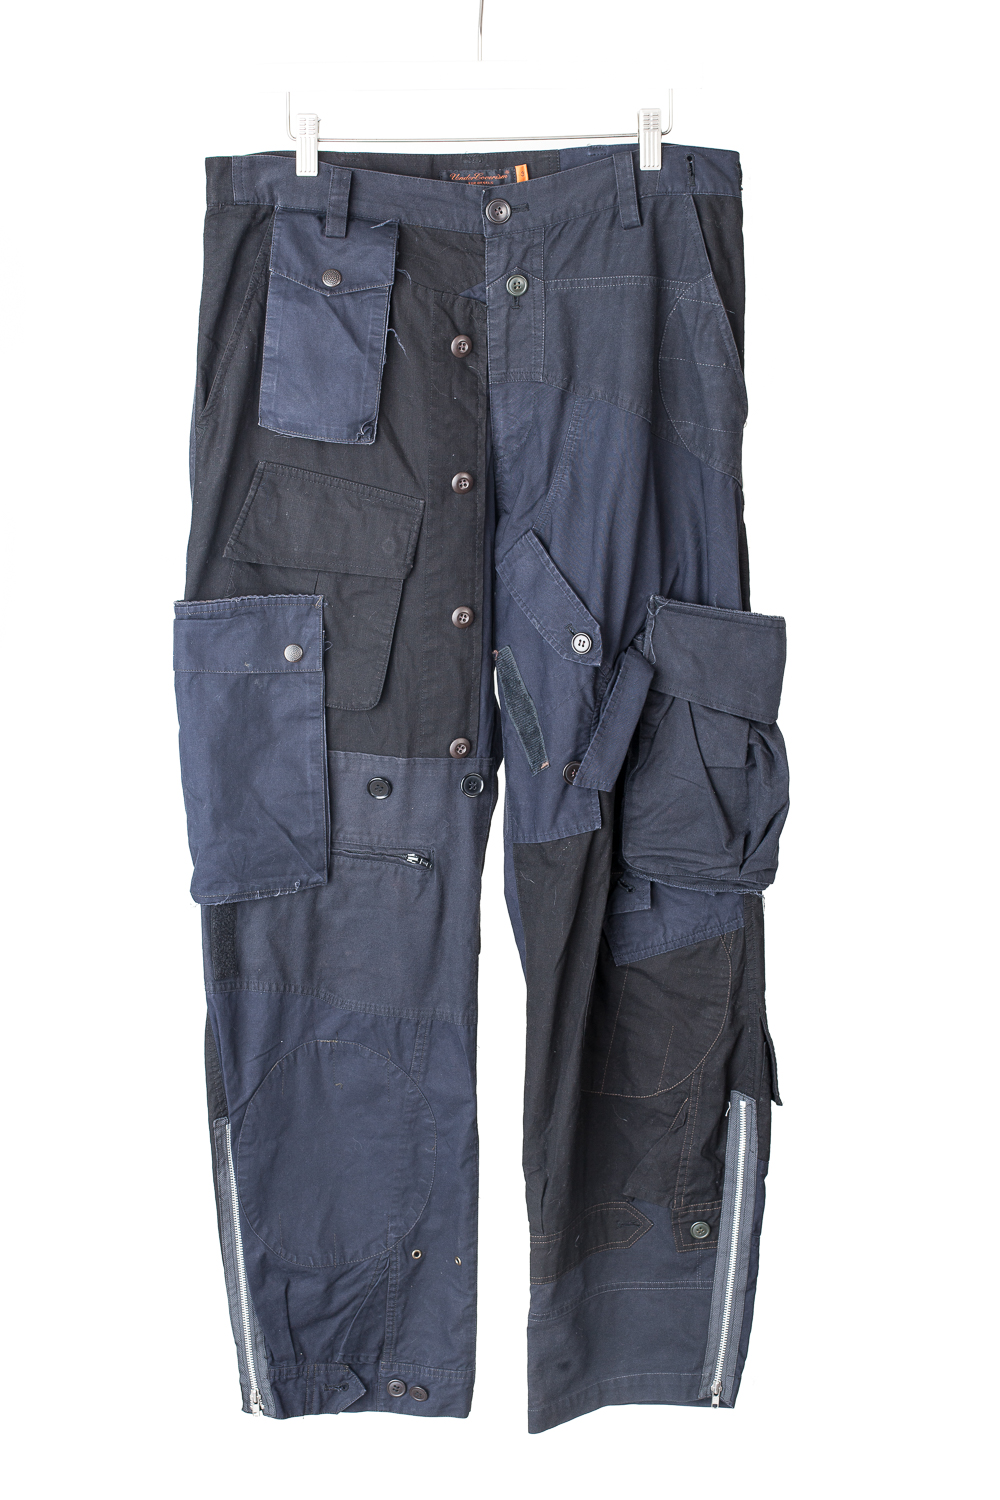 Reconstructed Supreme X Louis Vuitton Pants